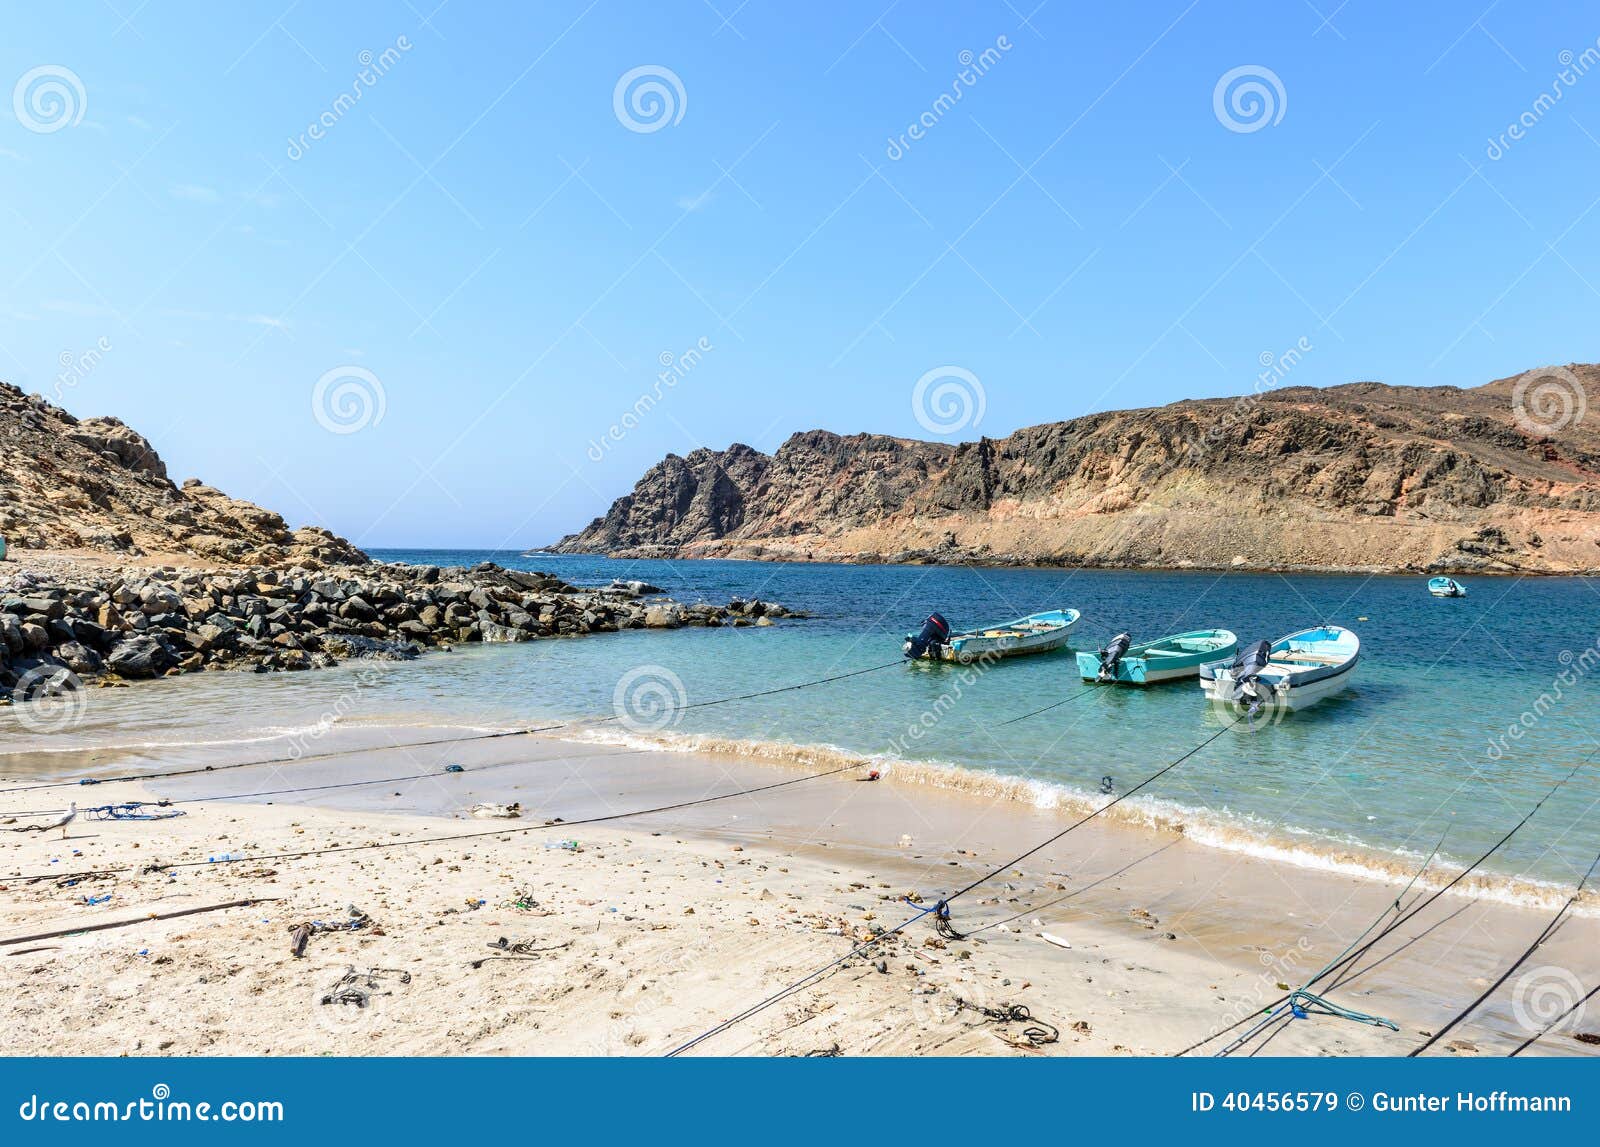 boats in small harbor near sadh, dhofar (oman)